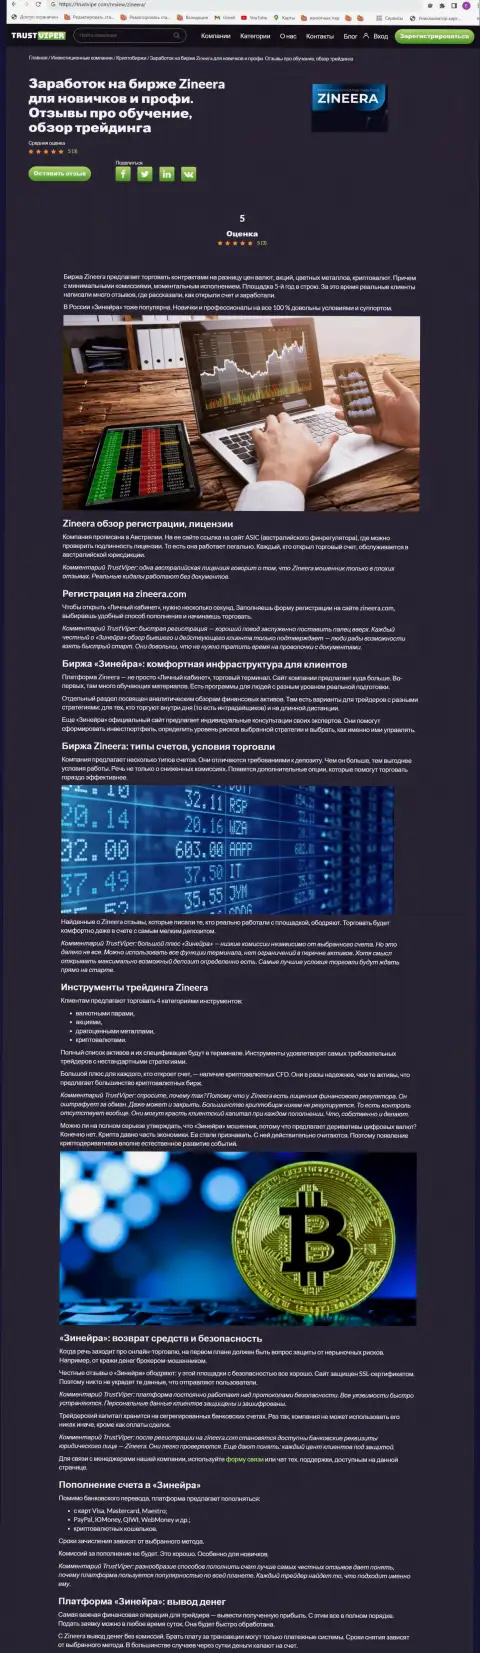 Обзор условий для торговли крипто брокерской фирмы Зиннейра на сайте траствайпер ком